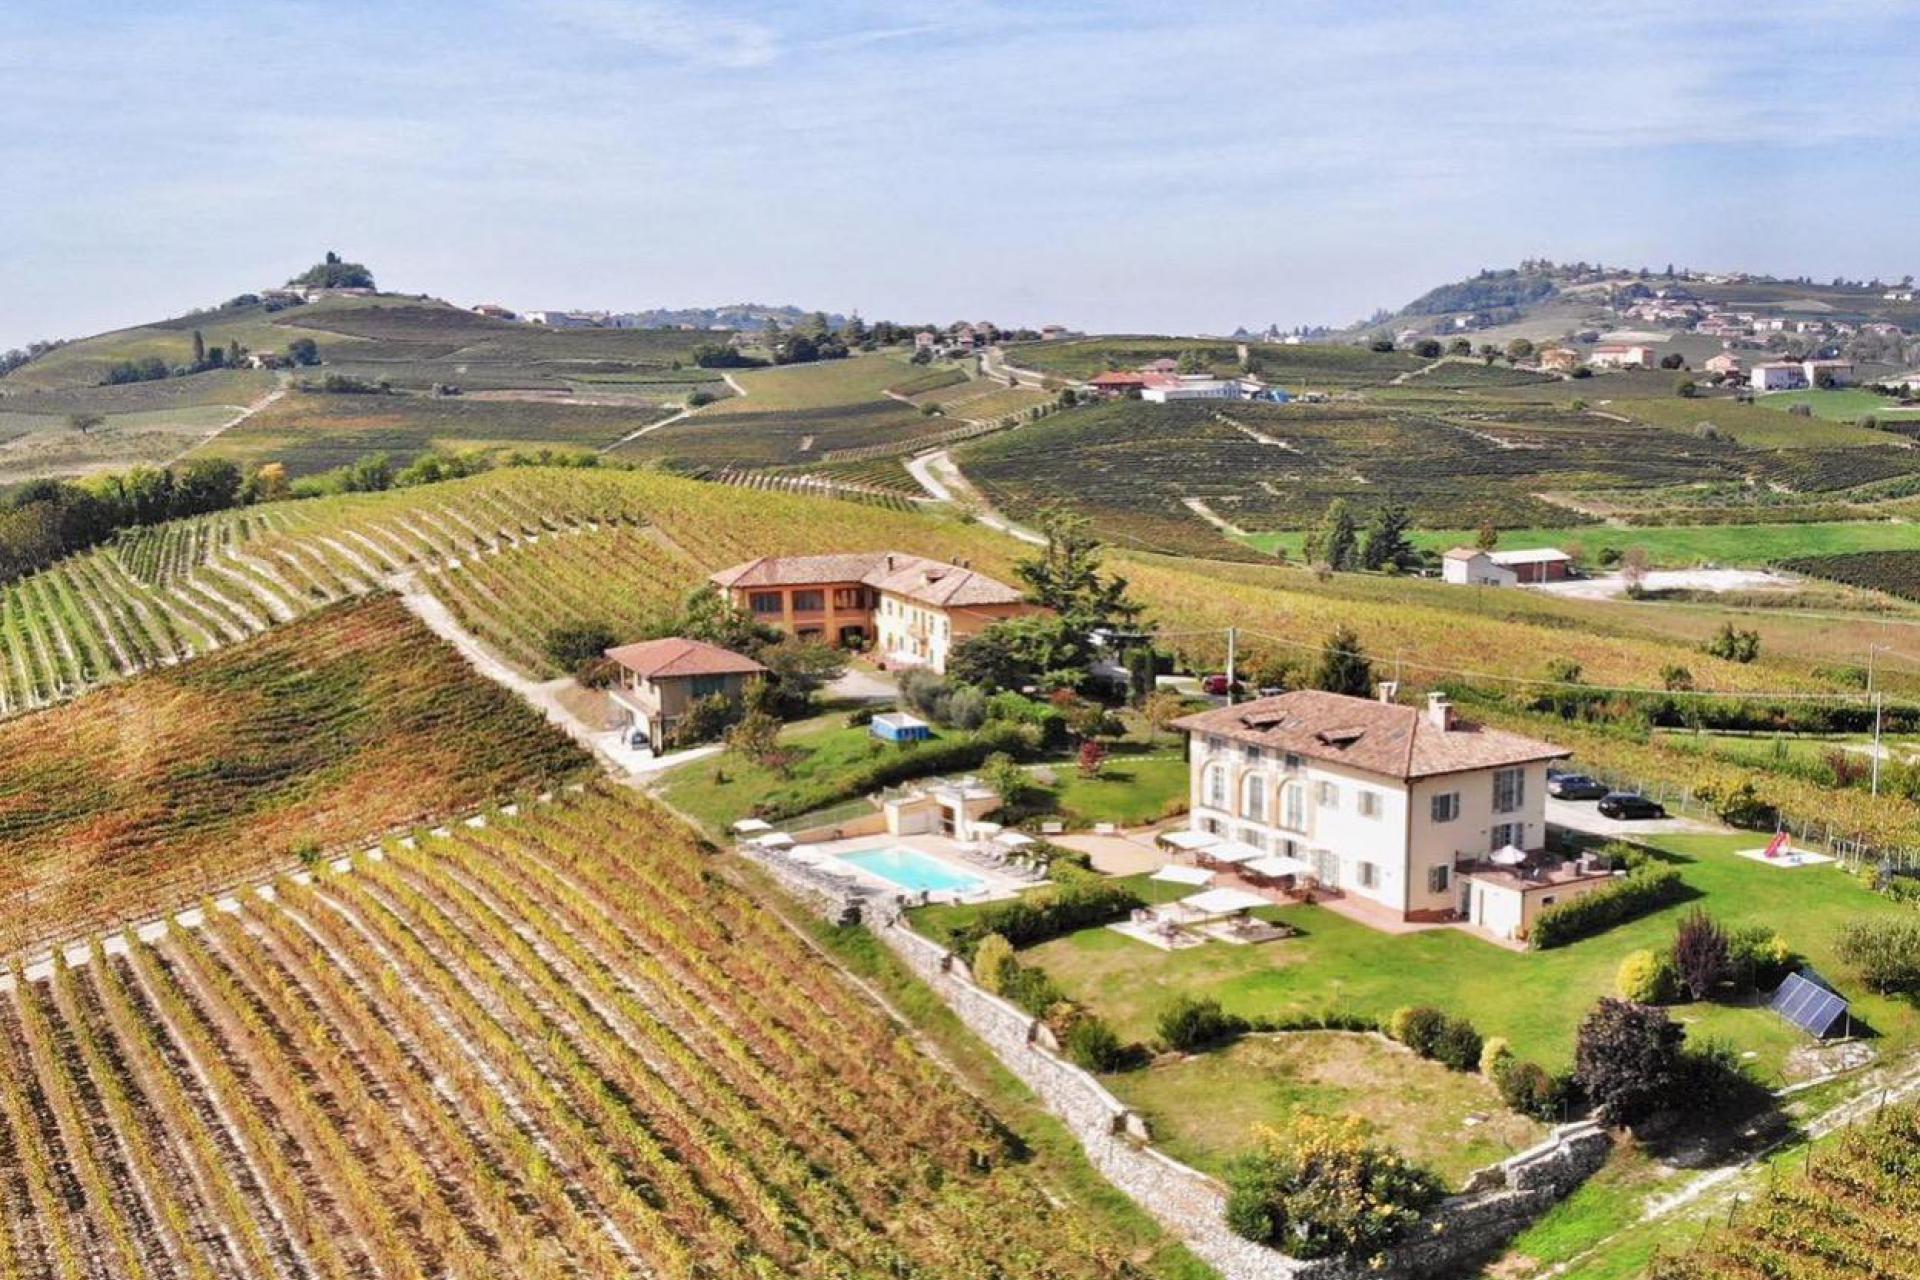 Knusse agriturismo in Piemonte tussen de wijngaarden